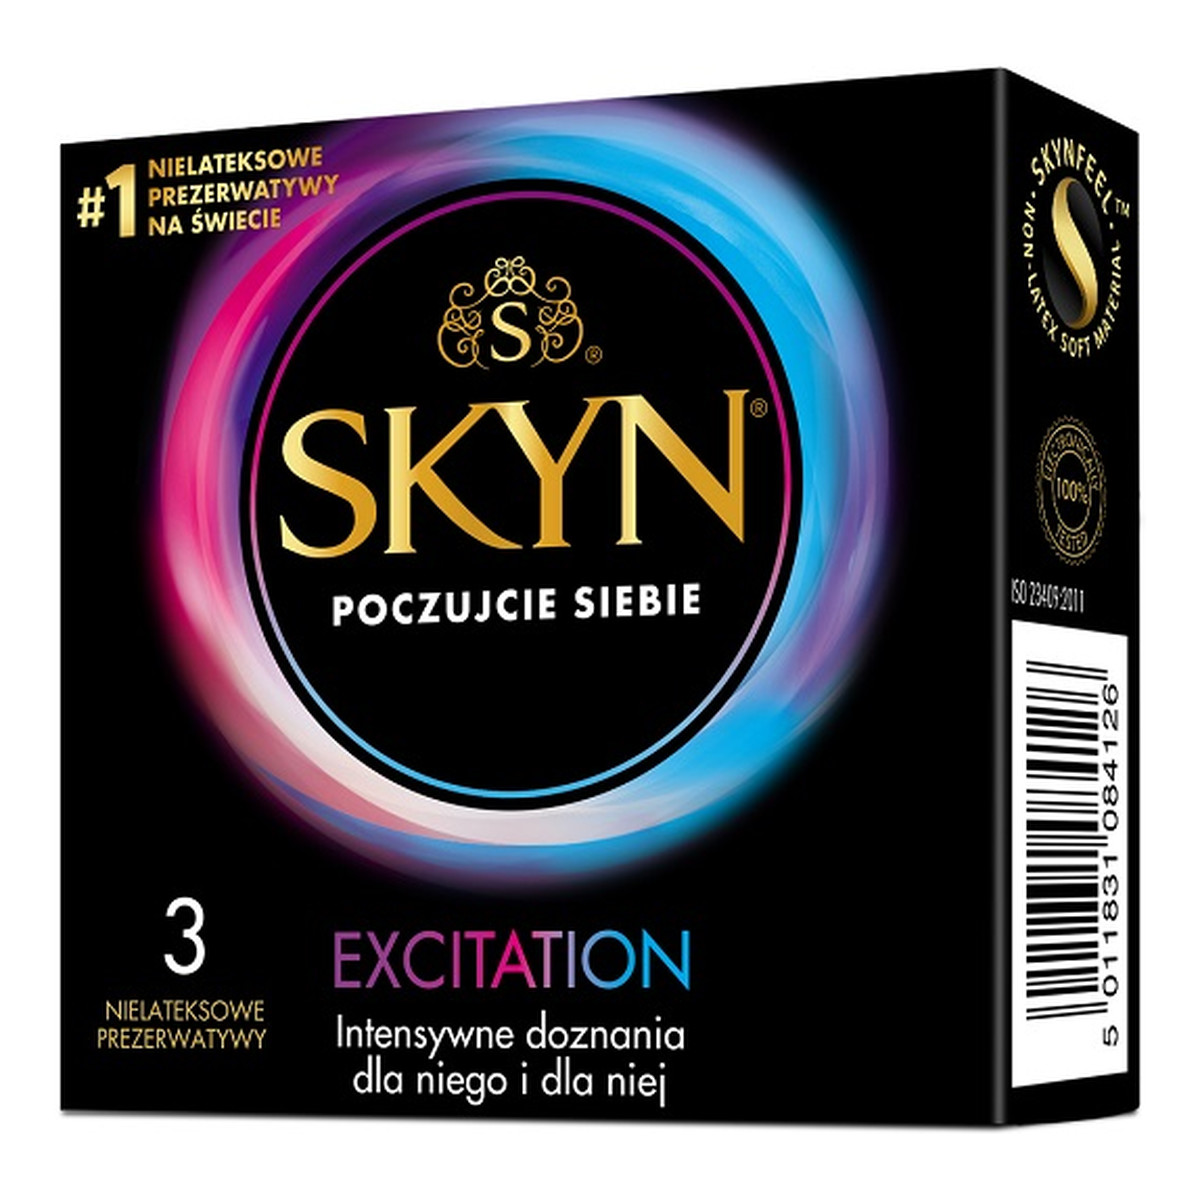 Unimil Skyn excitation nielateksowe prezerwatywy 3szt